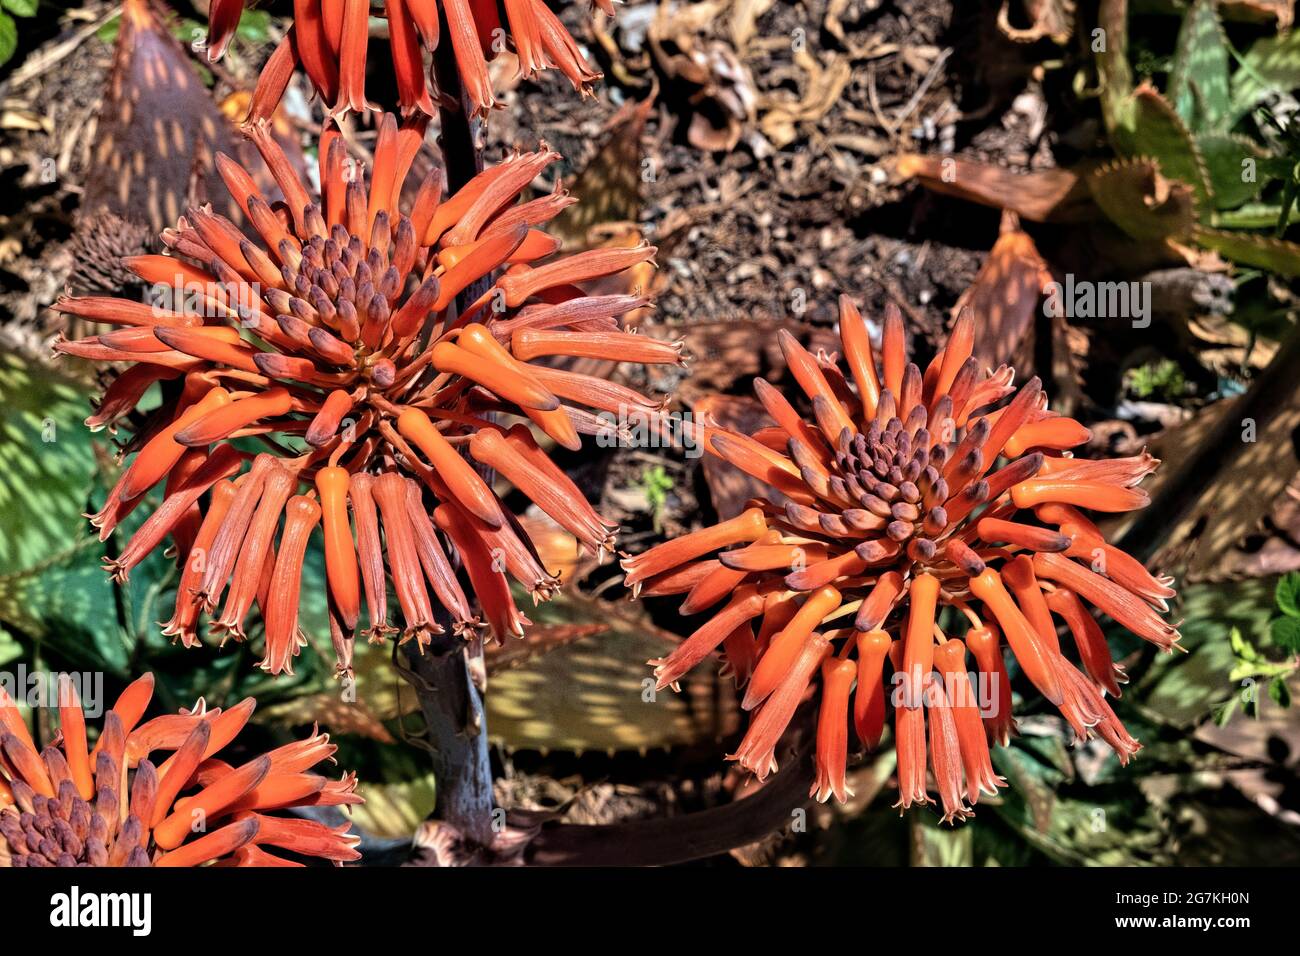 South African soap aloe (Aloe saponaria), botanical garden, San Francisco, California, U.S.A Stock Photo